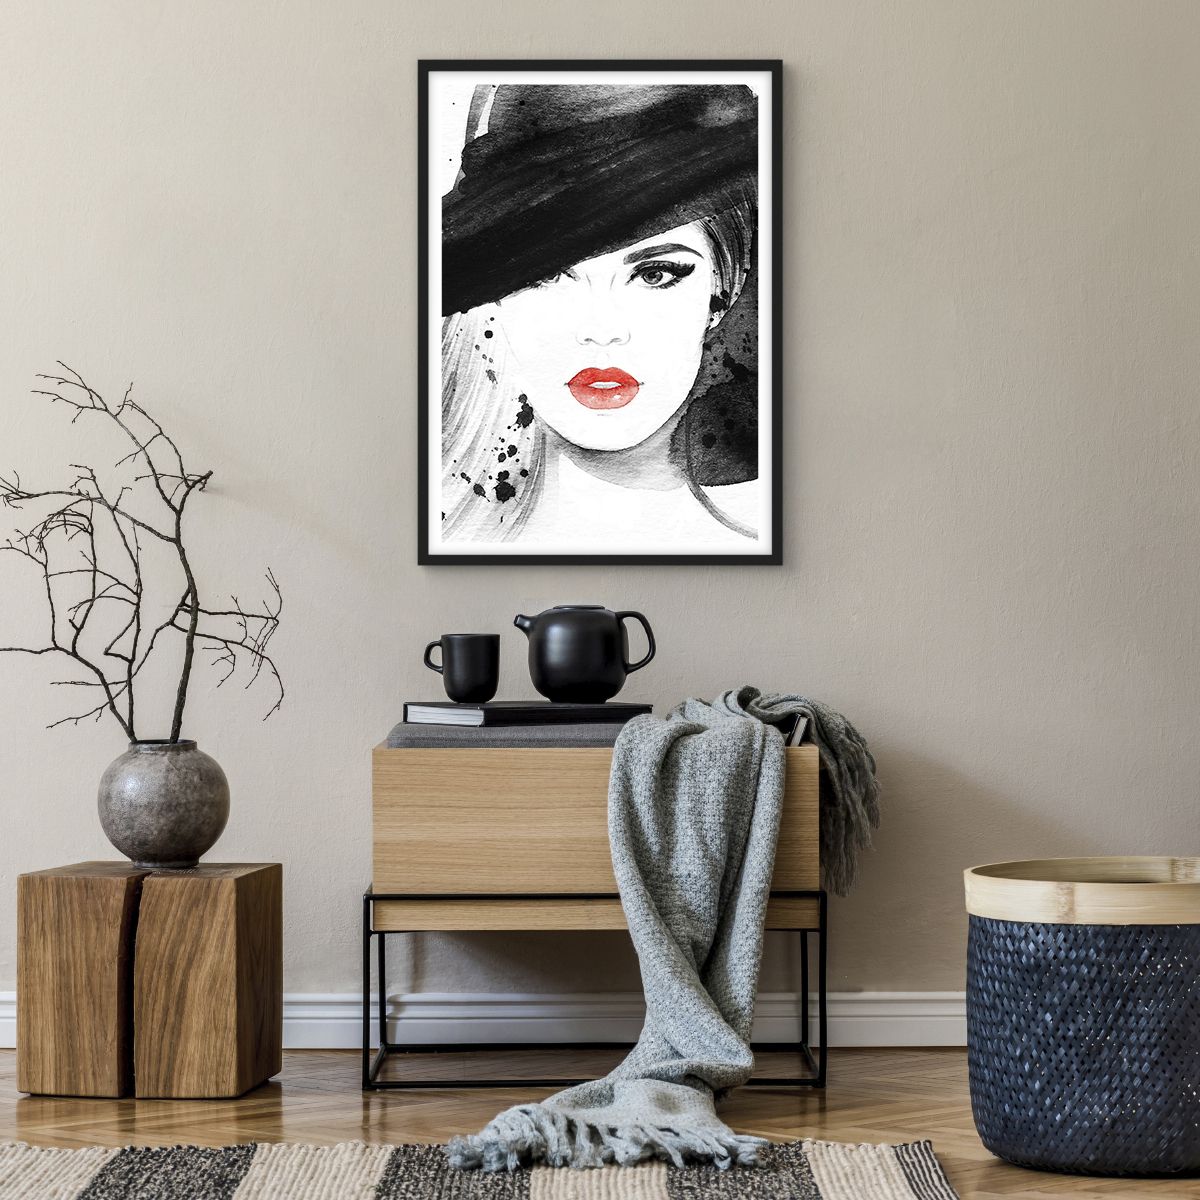 Affiche dans un cadre noir Femme, Affiche dans un cadre noir Visage De Femme, Affiche dans un cadre noir Portrait D'Une Femme, Affiche dans un cadre noir Lèvres Rouges, Affiche dans un cadre noir Mode